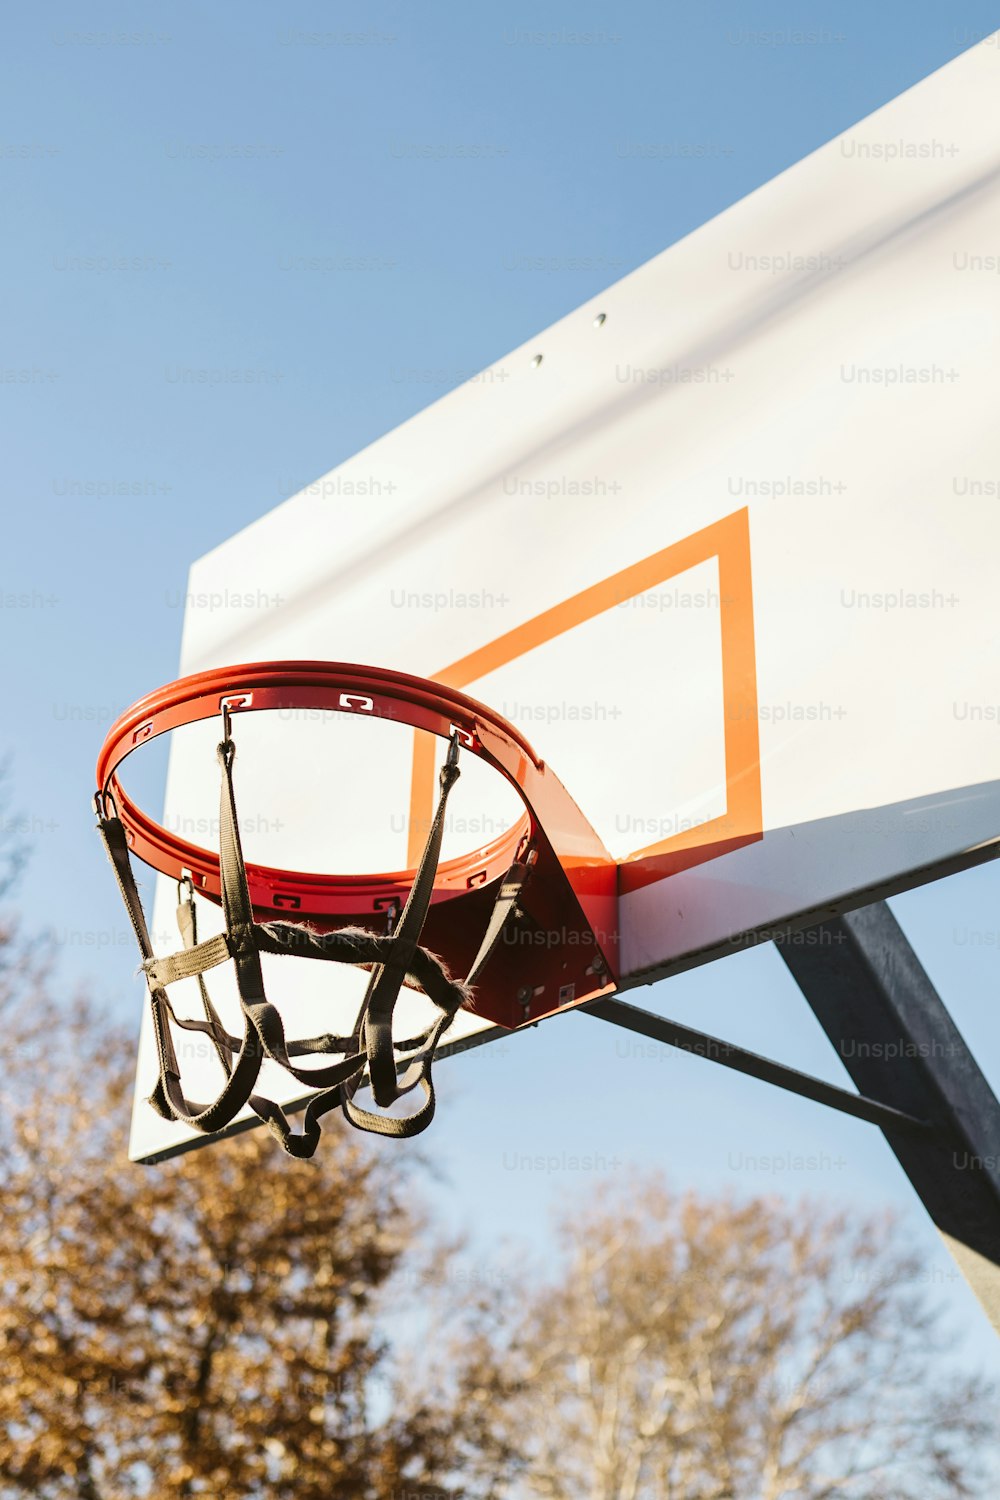 Un aro de baloncesto con una red